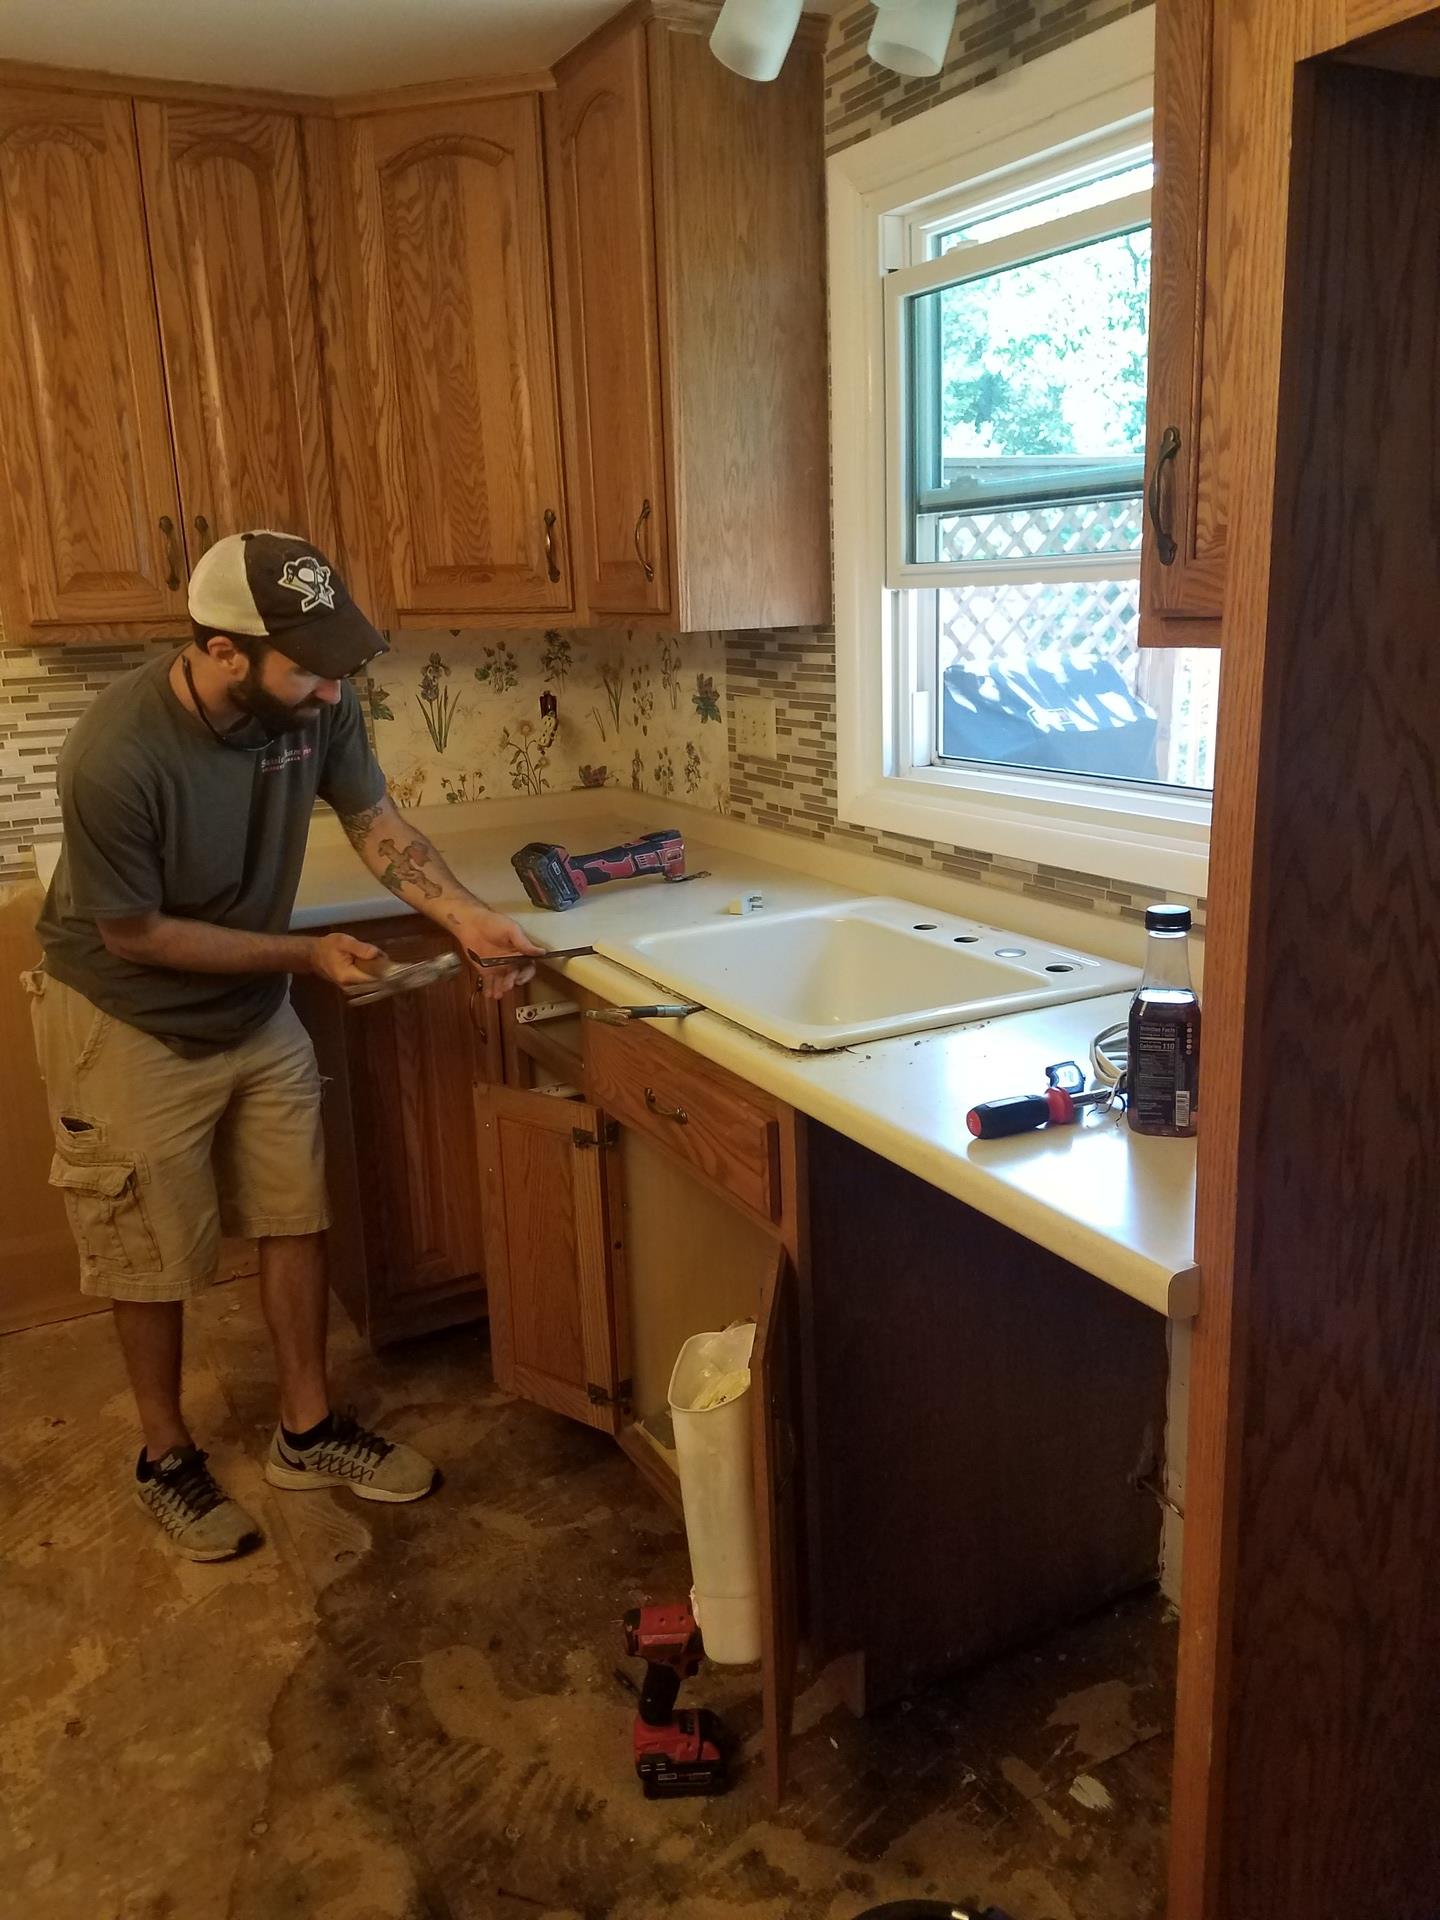 Repairing sink leak